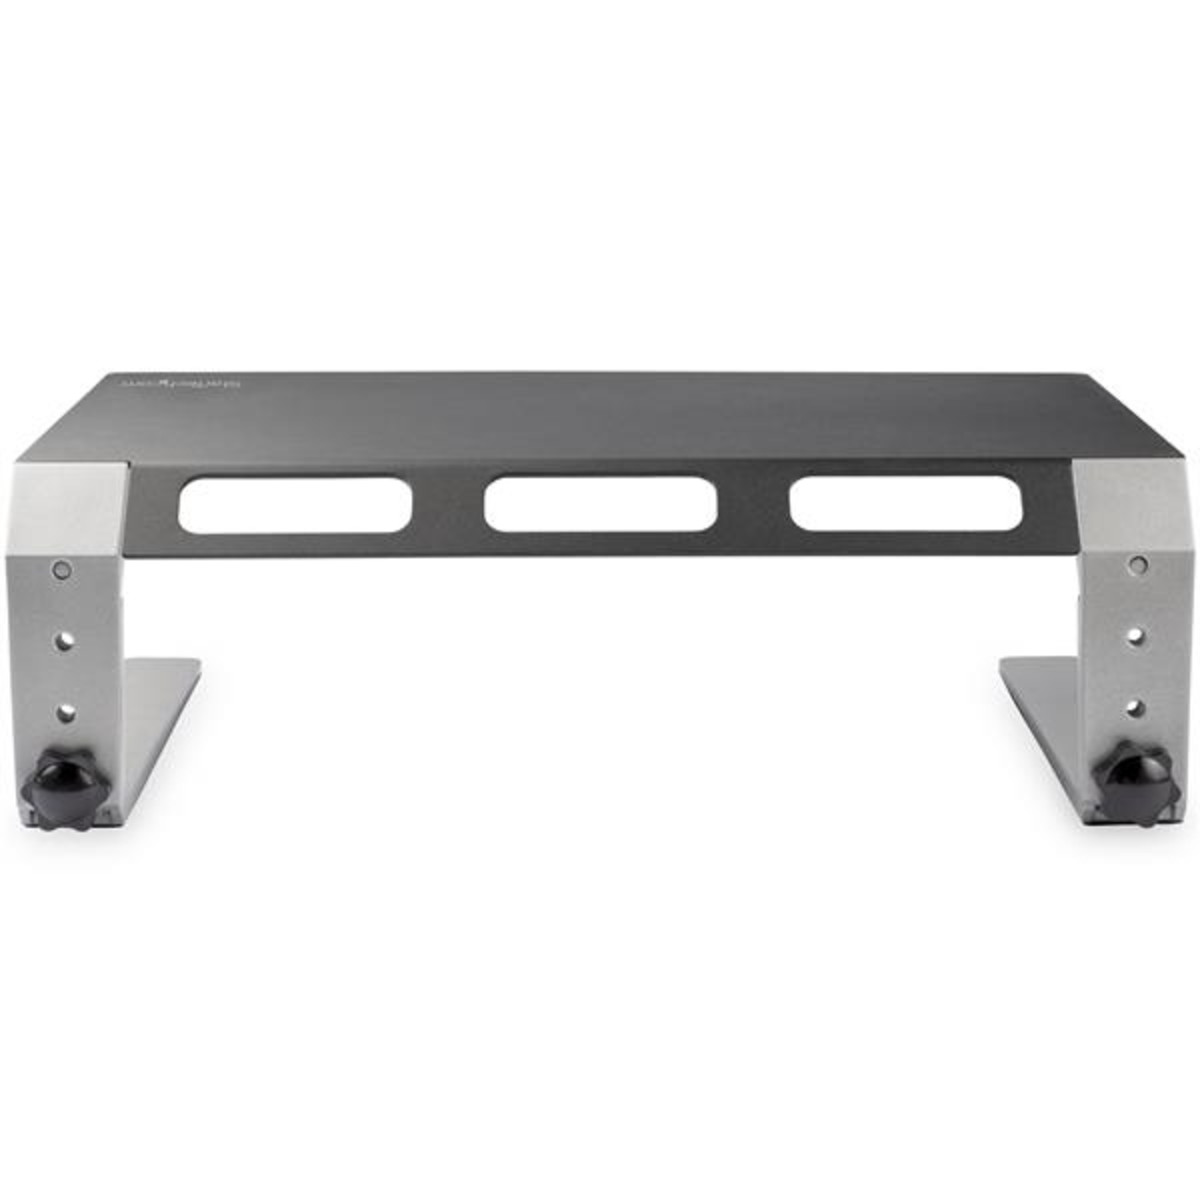 Monitor Riser Steel/ Aluminum Adjustable